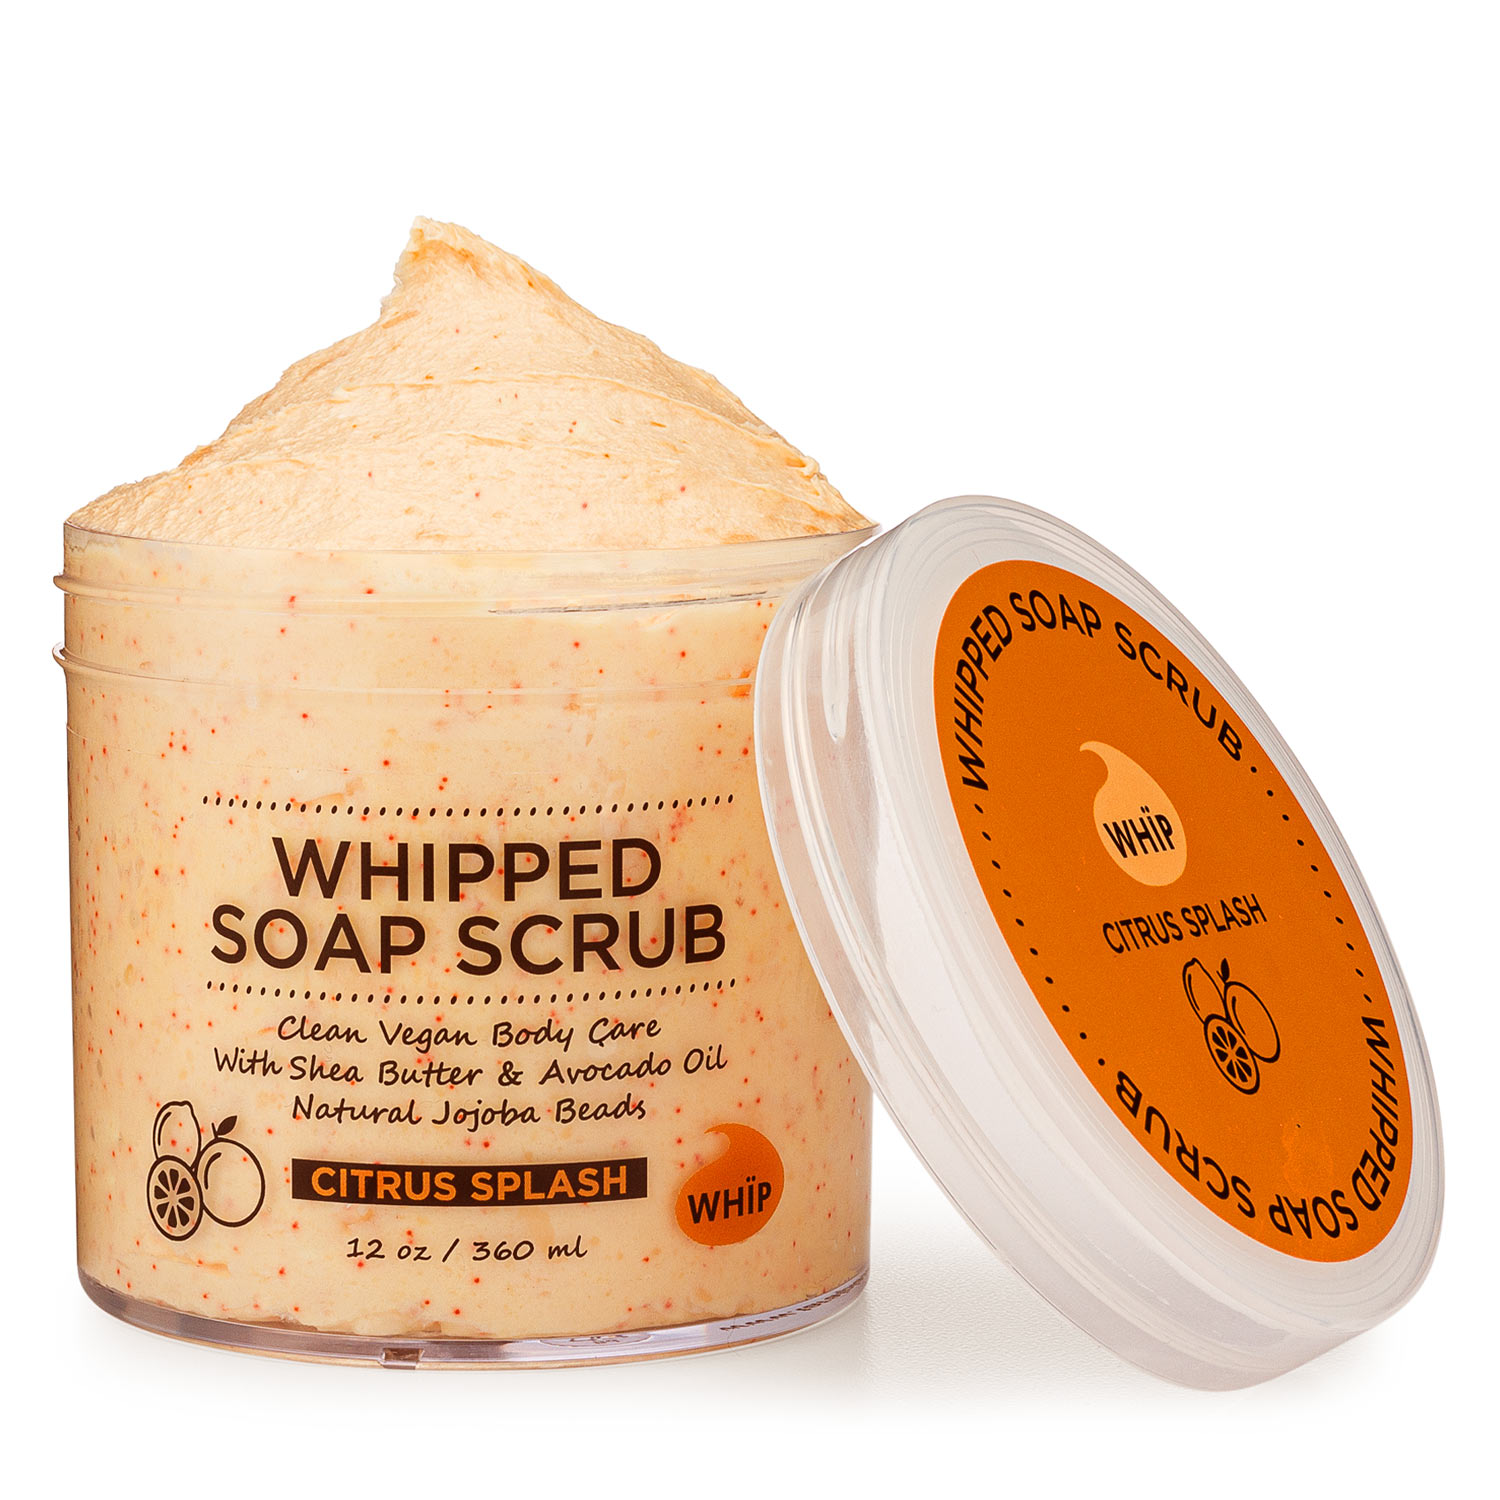 Whipped Soap Scrub - Citrus Splash WHÏP Image